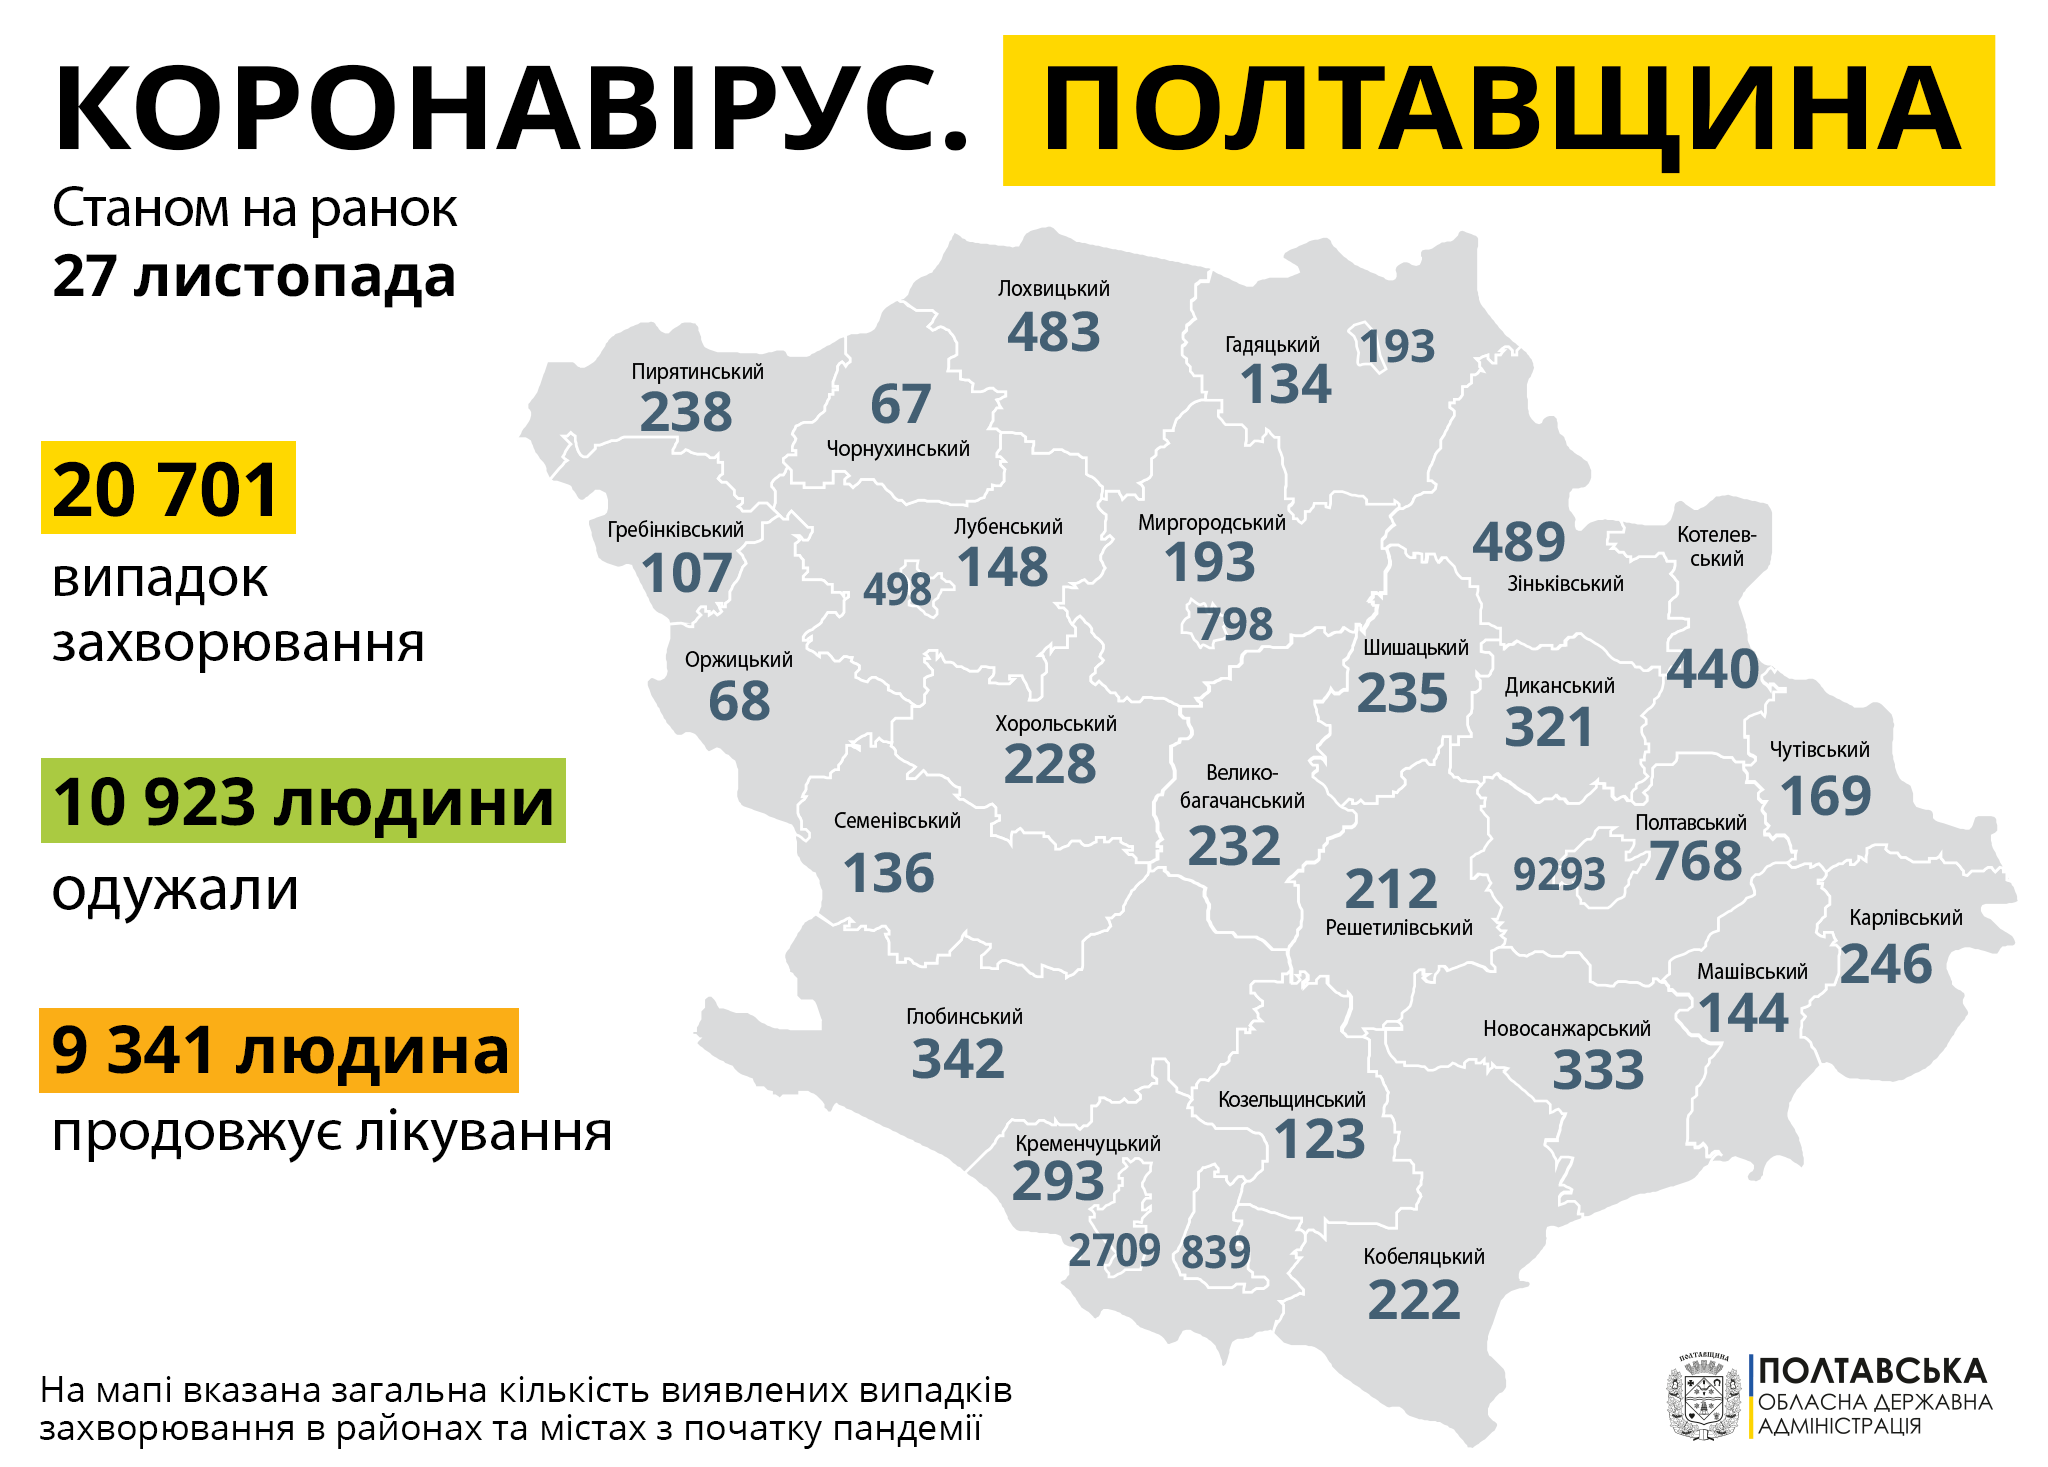 На Полтавщині за минулу добу зареєстровано 497 нових випадків захворювання на COVID-19